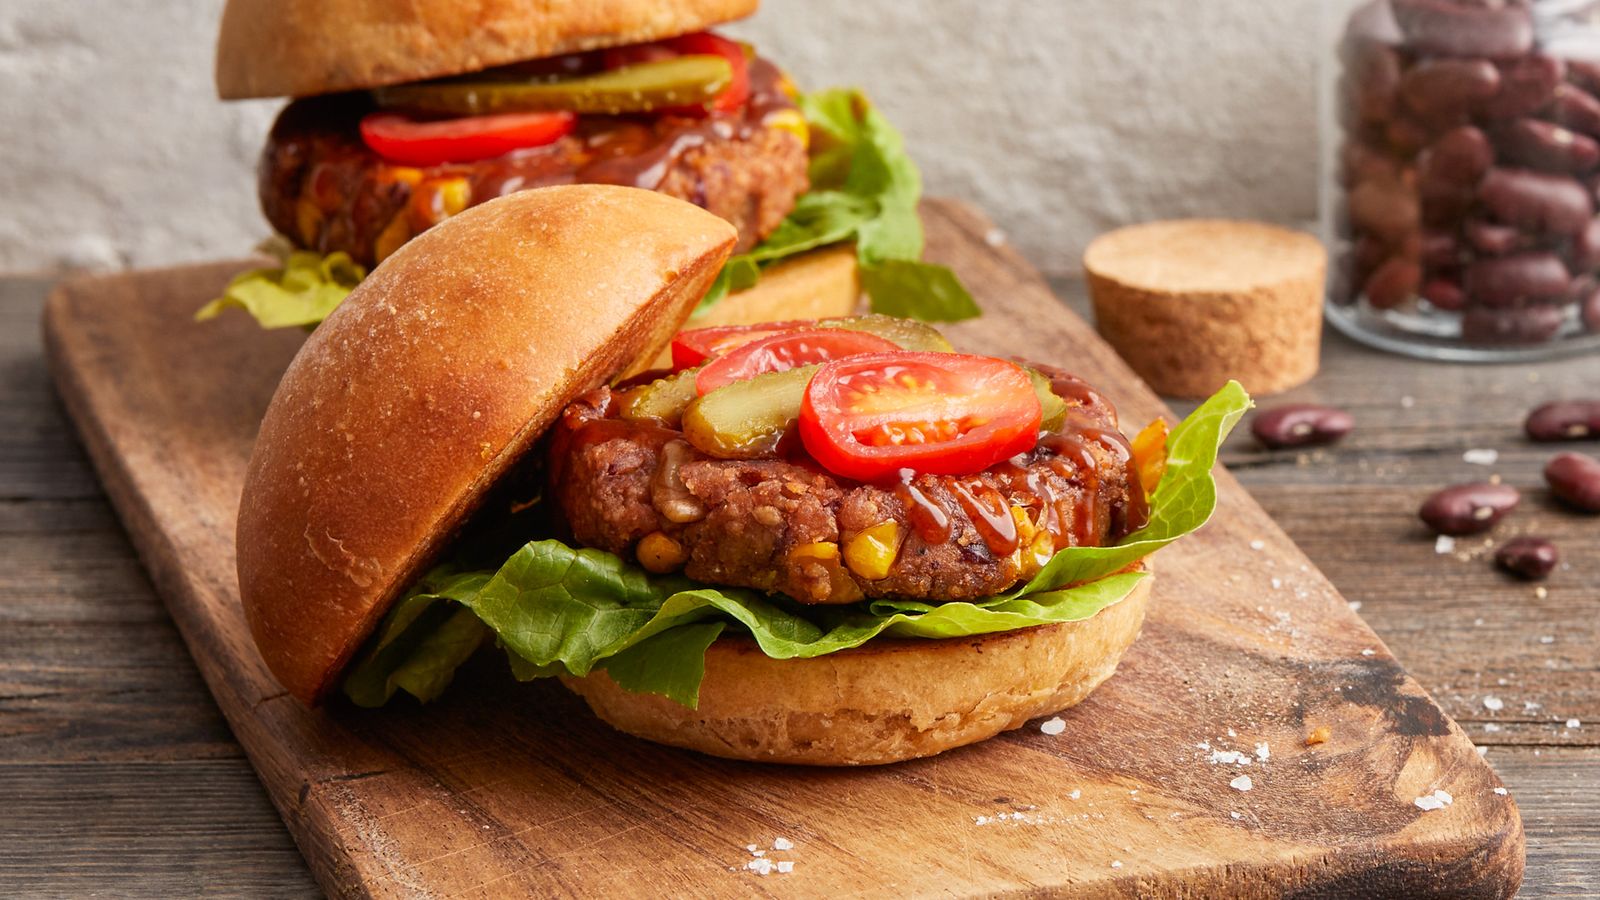 Kidneybohnen-Burger mit BBQ-Sauce